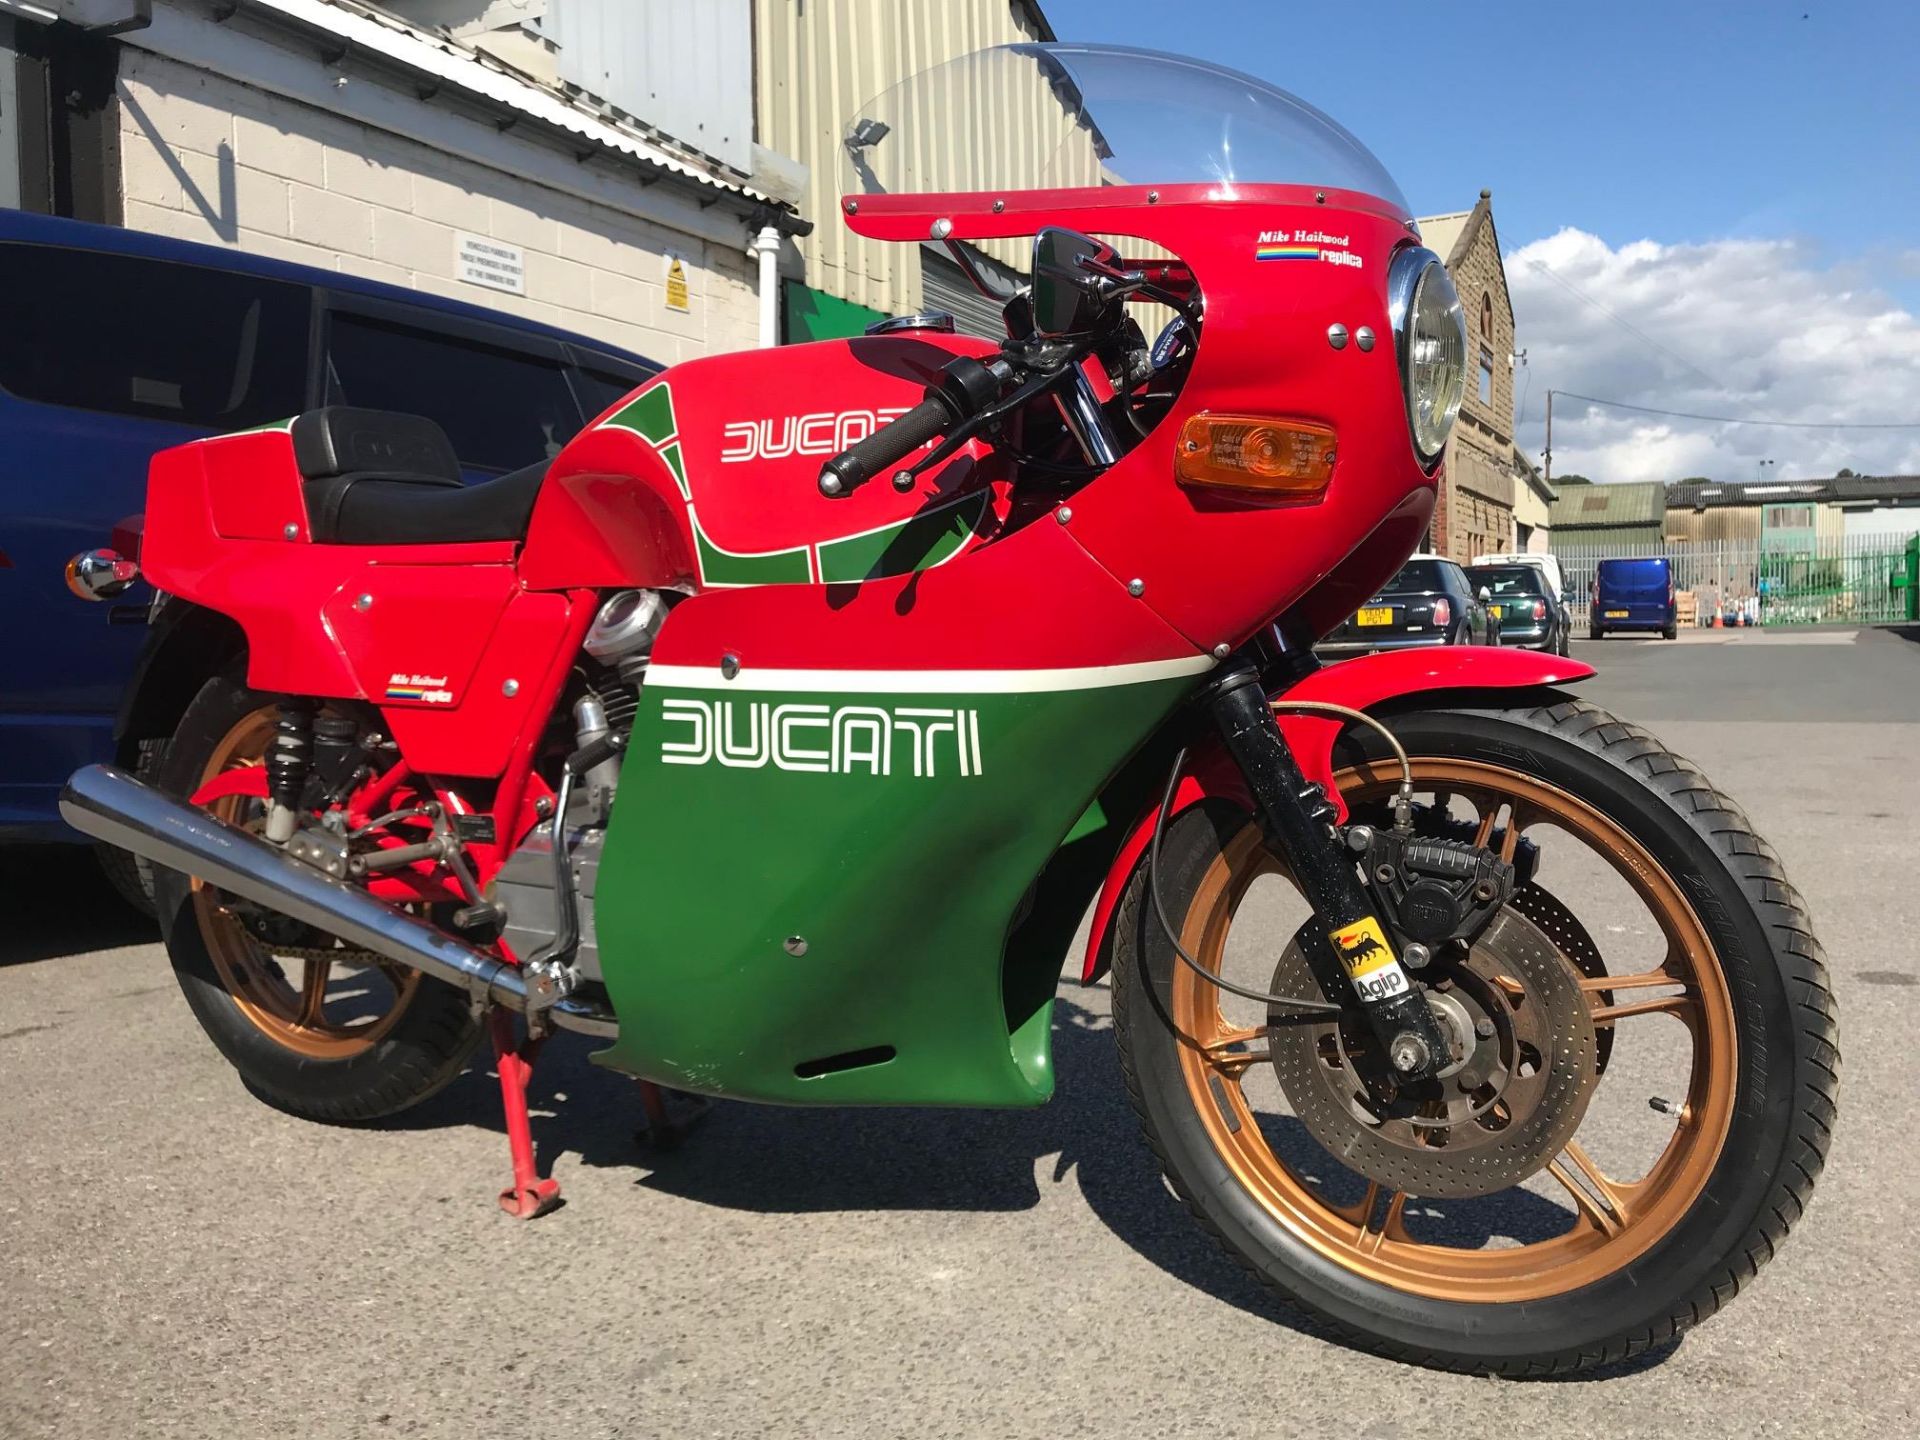 1982 Ducati MHR900 - Image 4 of 21